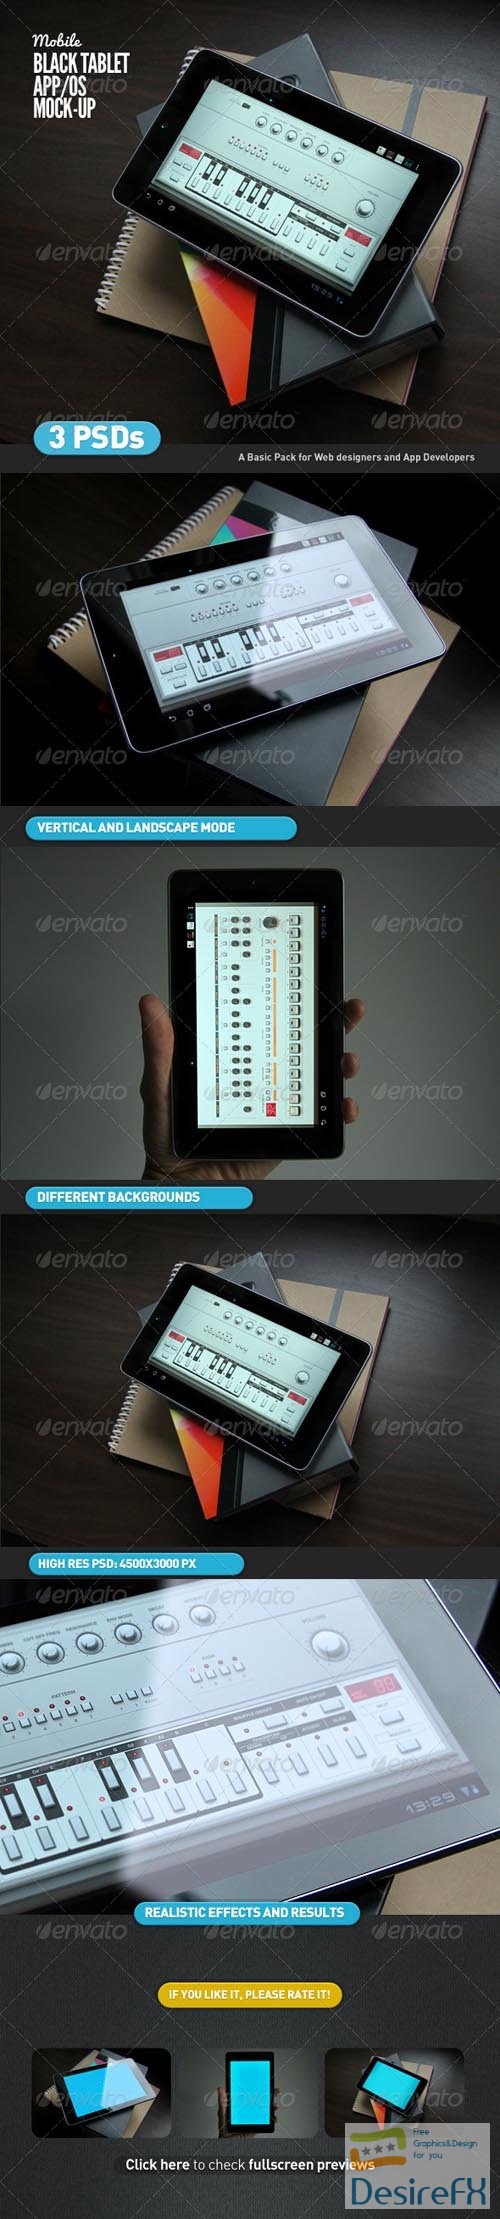 GR - Black Tablet | Android GUI App Mock-Up 4630361